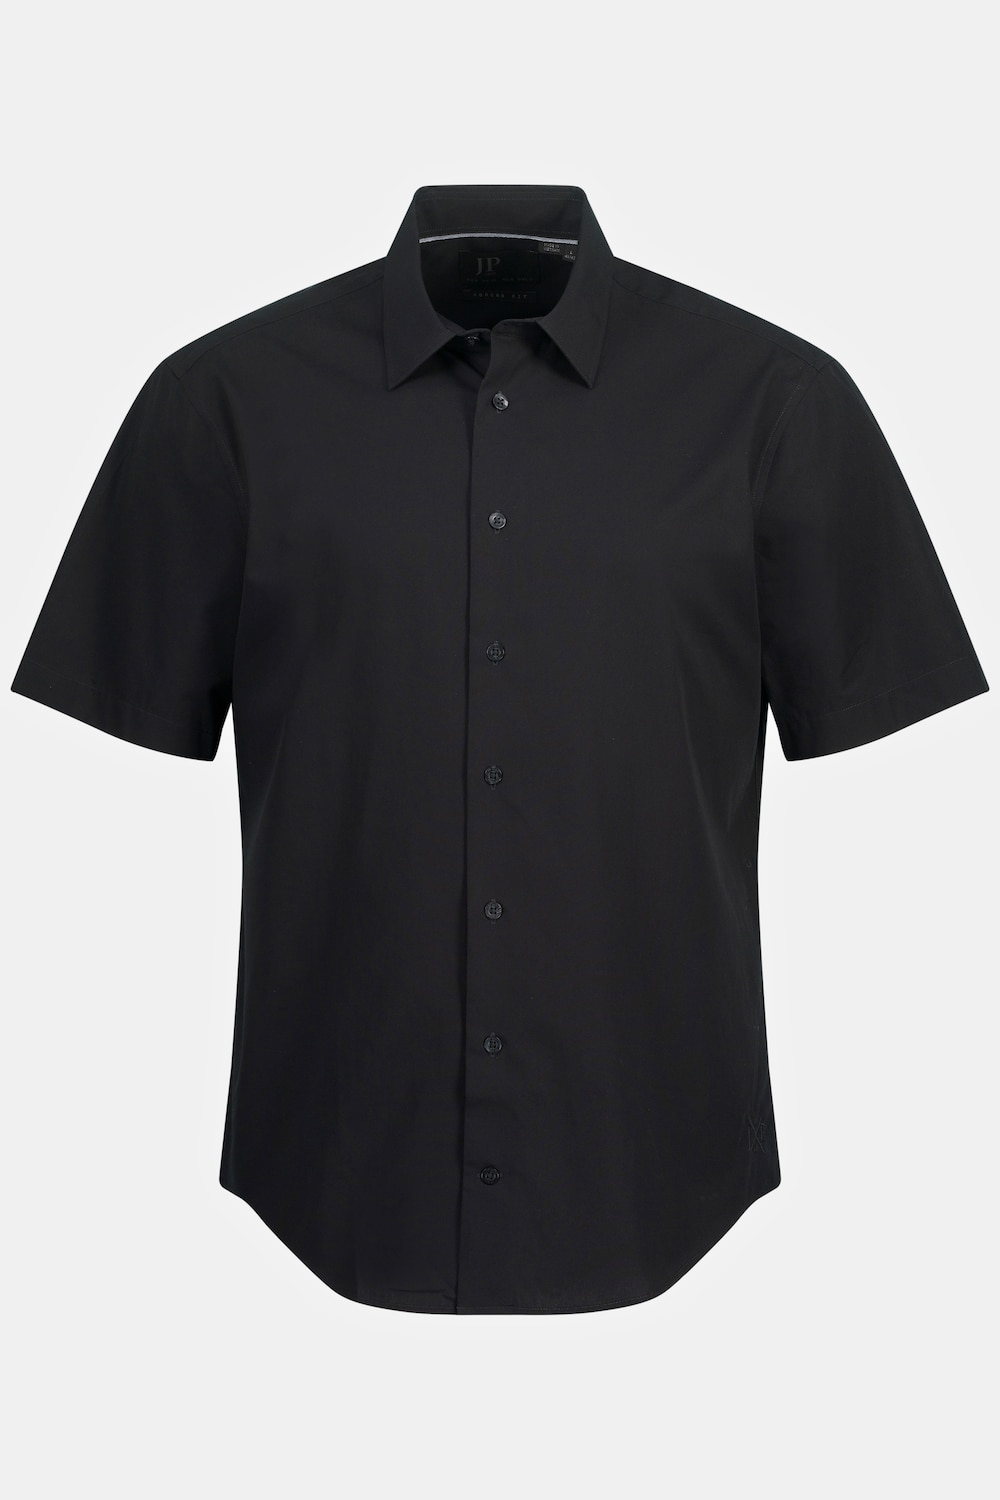 Grote Maten Zakelijk overhemd, Heren, zwart, Maat: 4XL, Katoen, JP1880